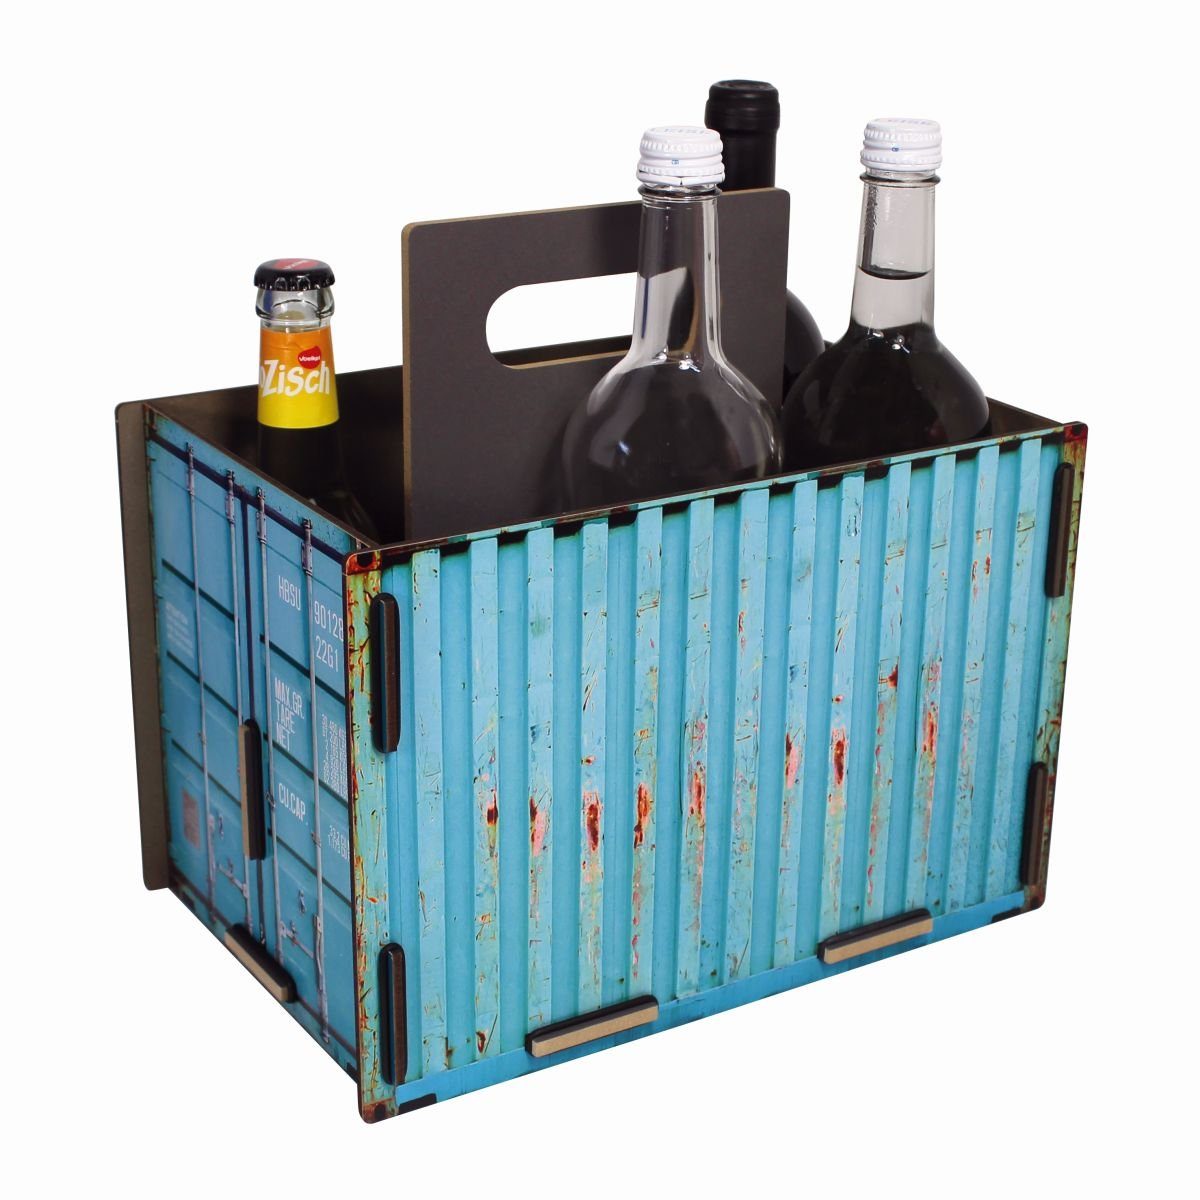 WERKHAUS® Flaschenkorb Werkhaus - Sixpack (CO1503) korb Türkis "Container" - Flaschenträger